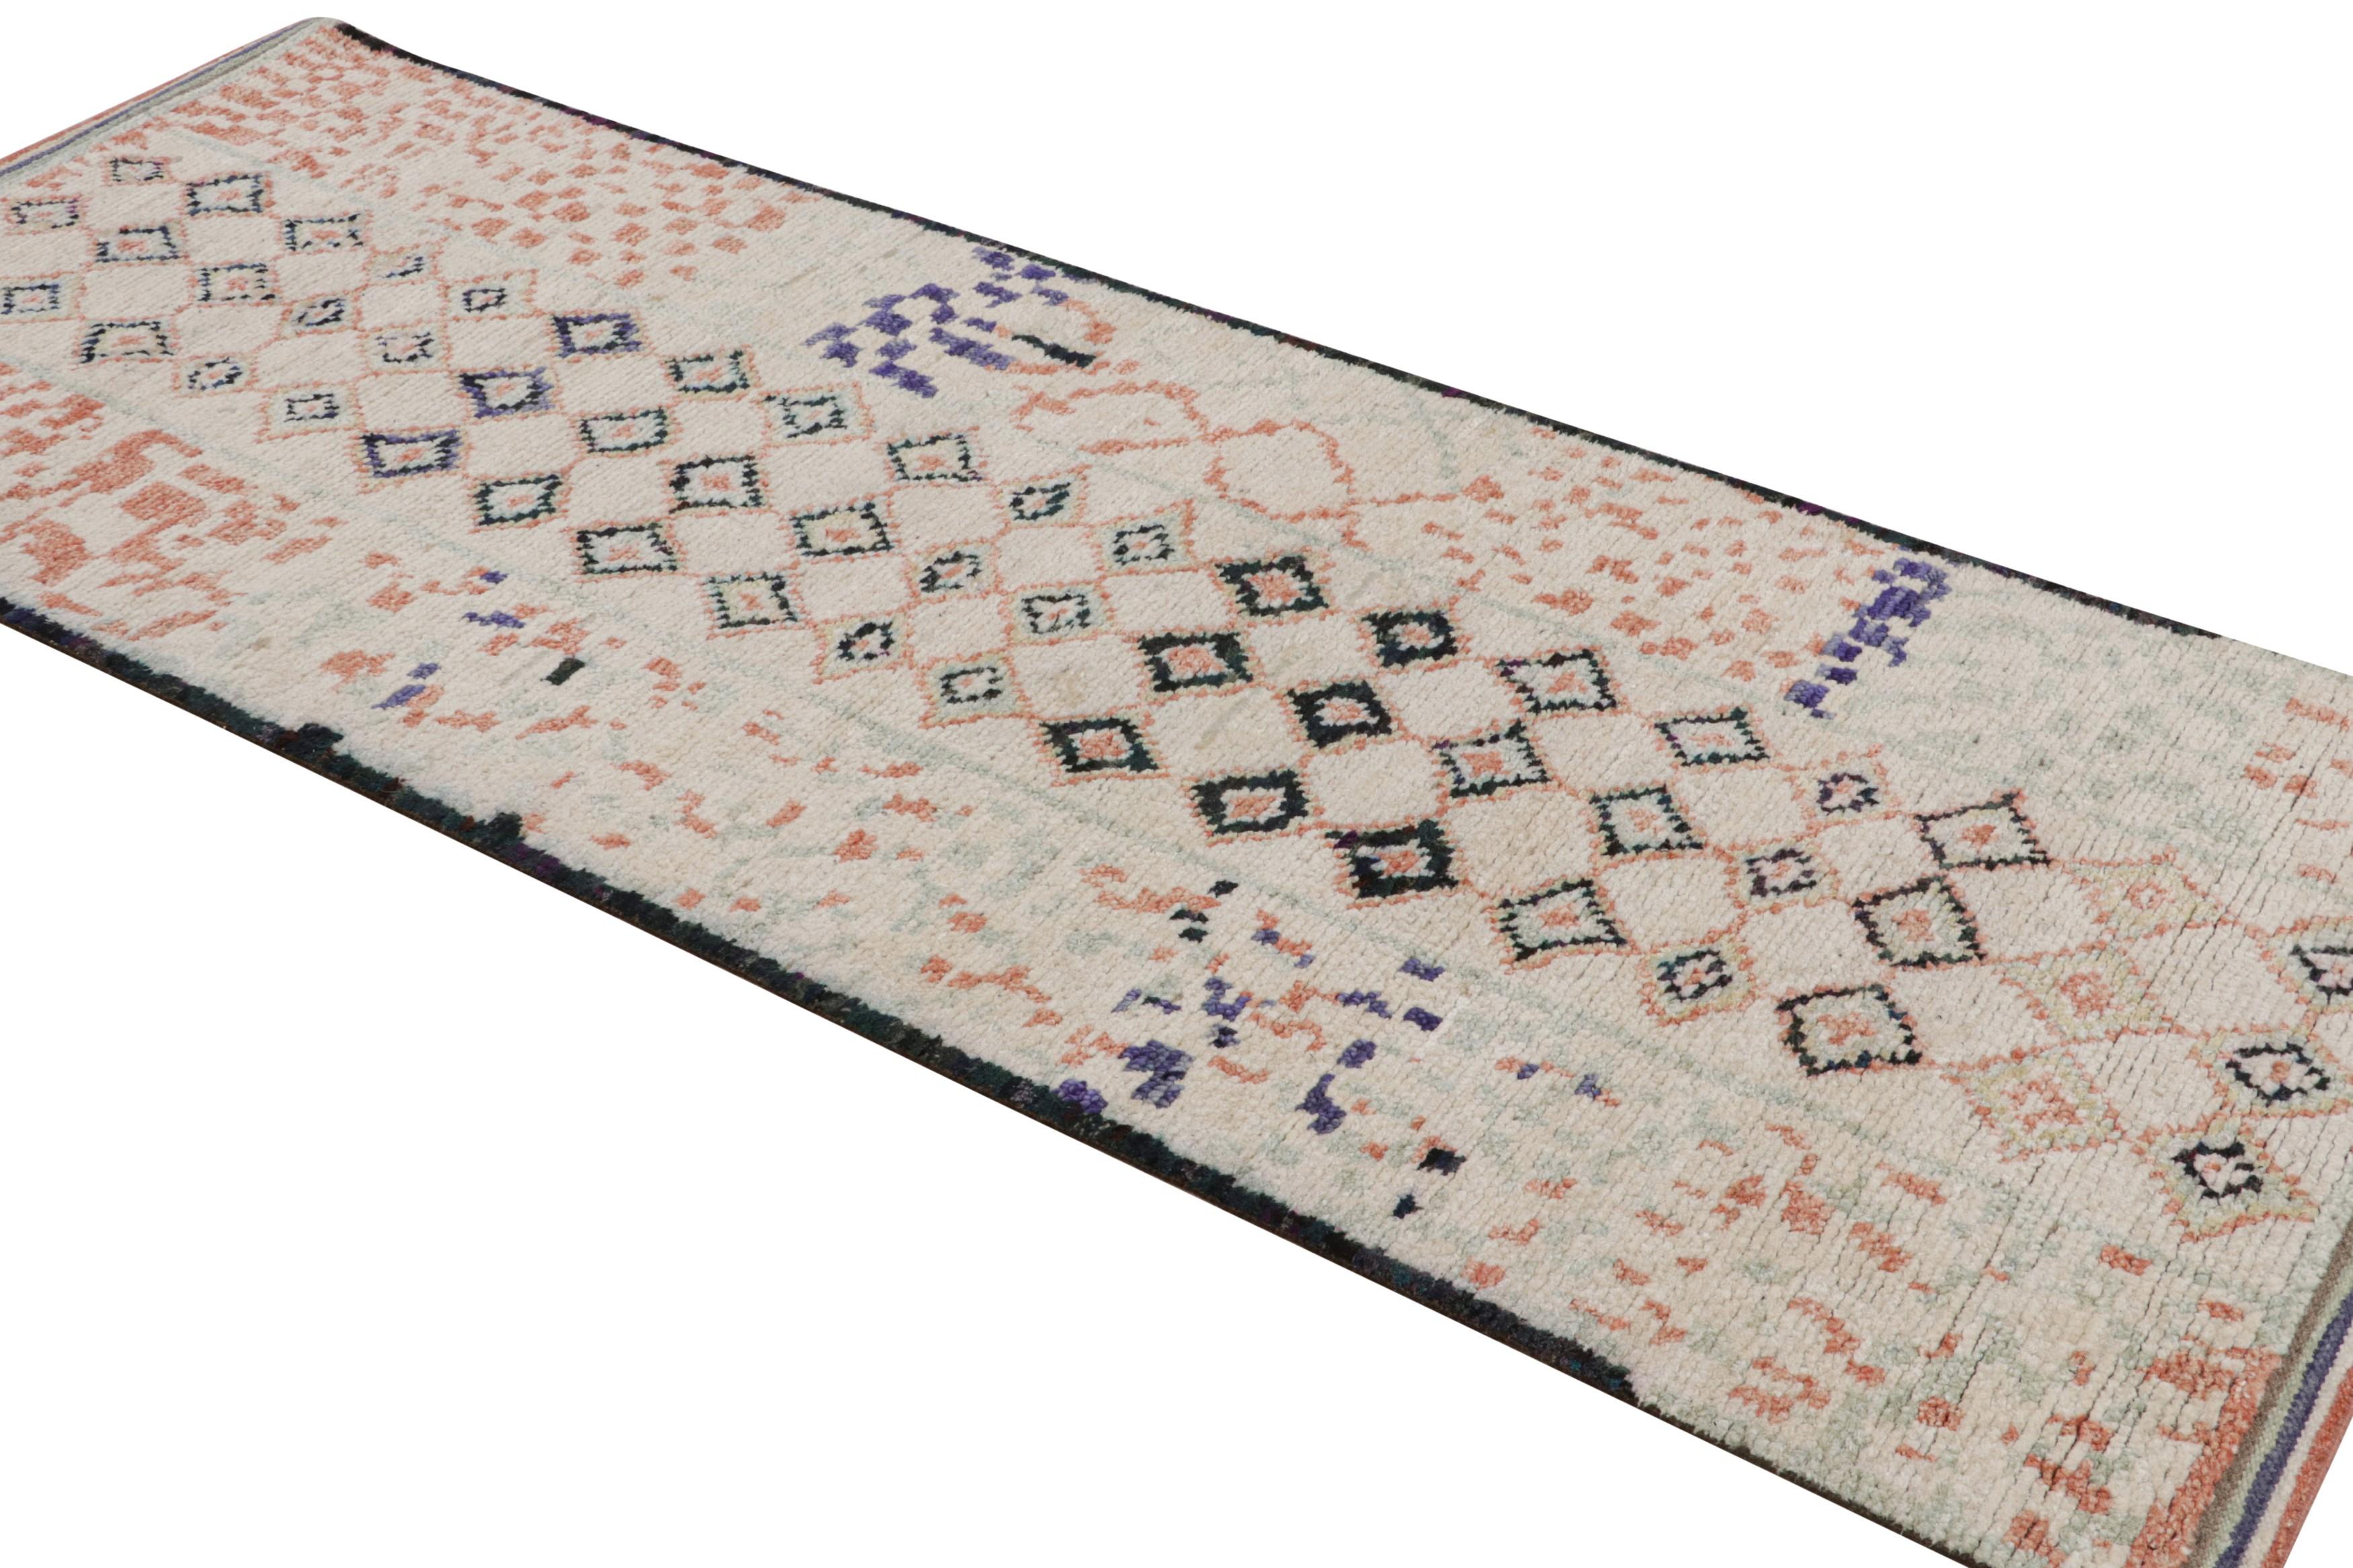 Dieser handgeknüpfte Teppich aus Wolle und Seide im modernen marokkanischen Stil (3x8) weist eine gerippte Textur auf, die von Boucherouite-Strukturen inspiriert ist.  

Über das Design: 

Kenner werden die subtile Anziehungskraft des Teppichs